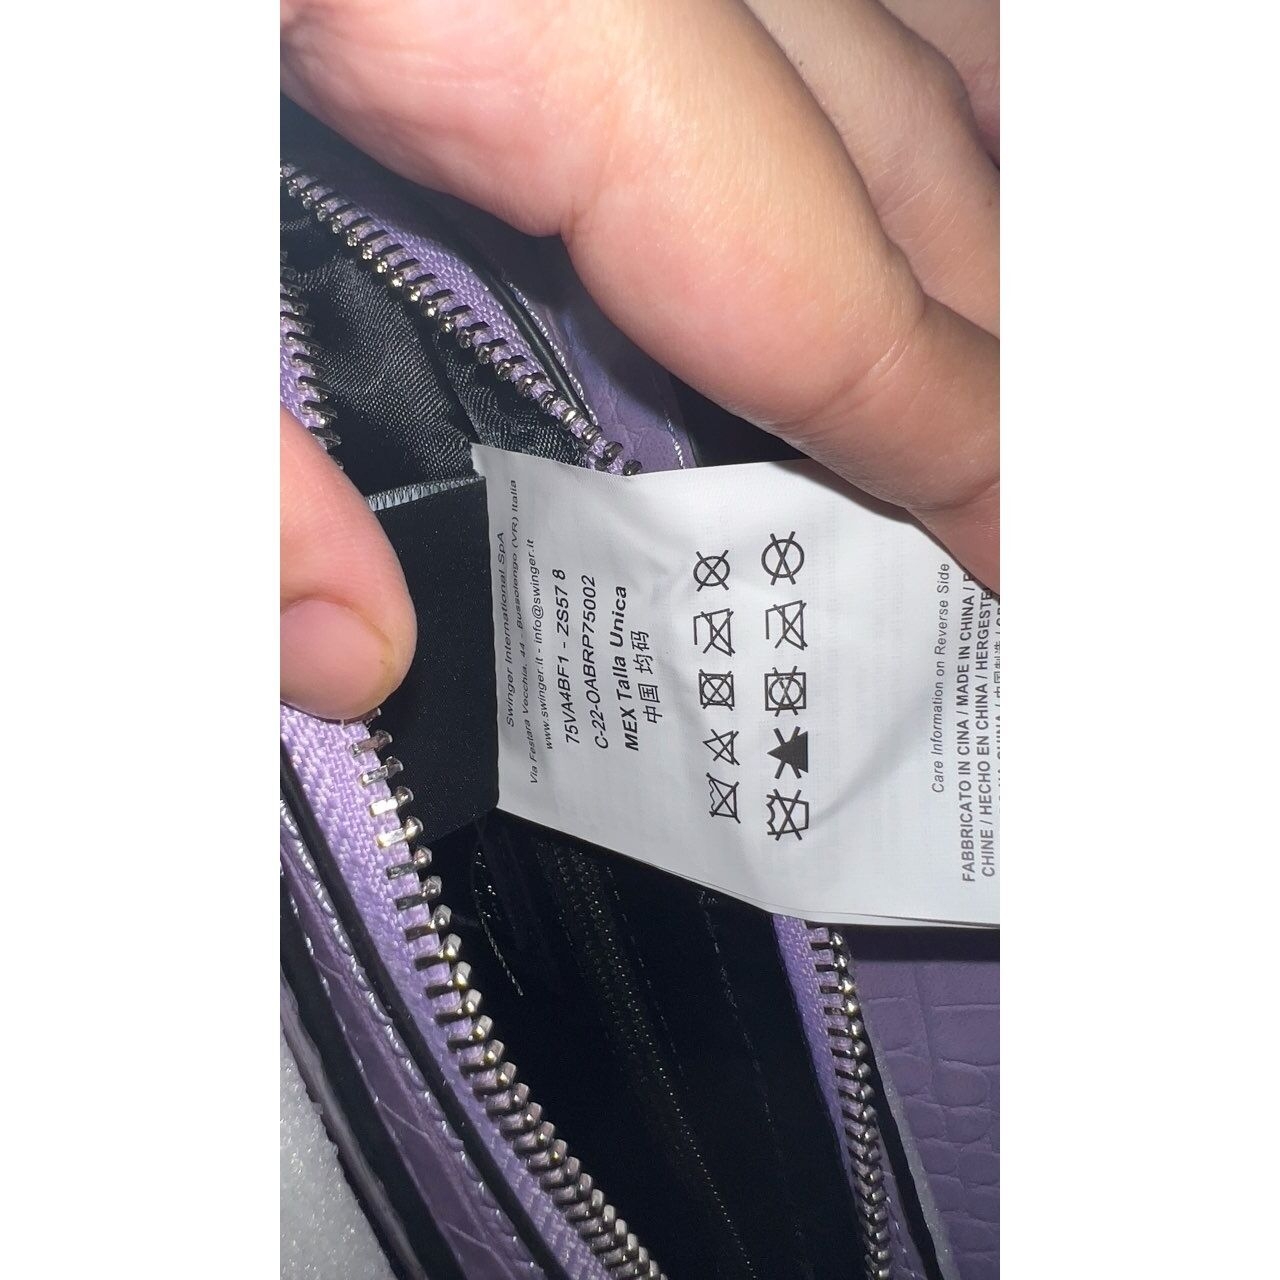 Versace Jeans Couture Purple Shoulder Bag